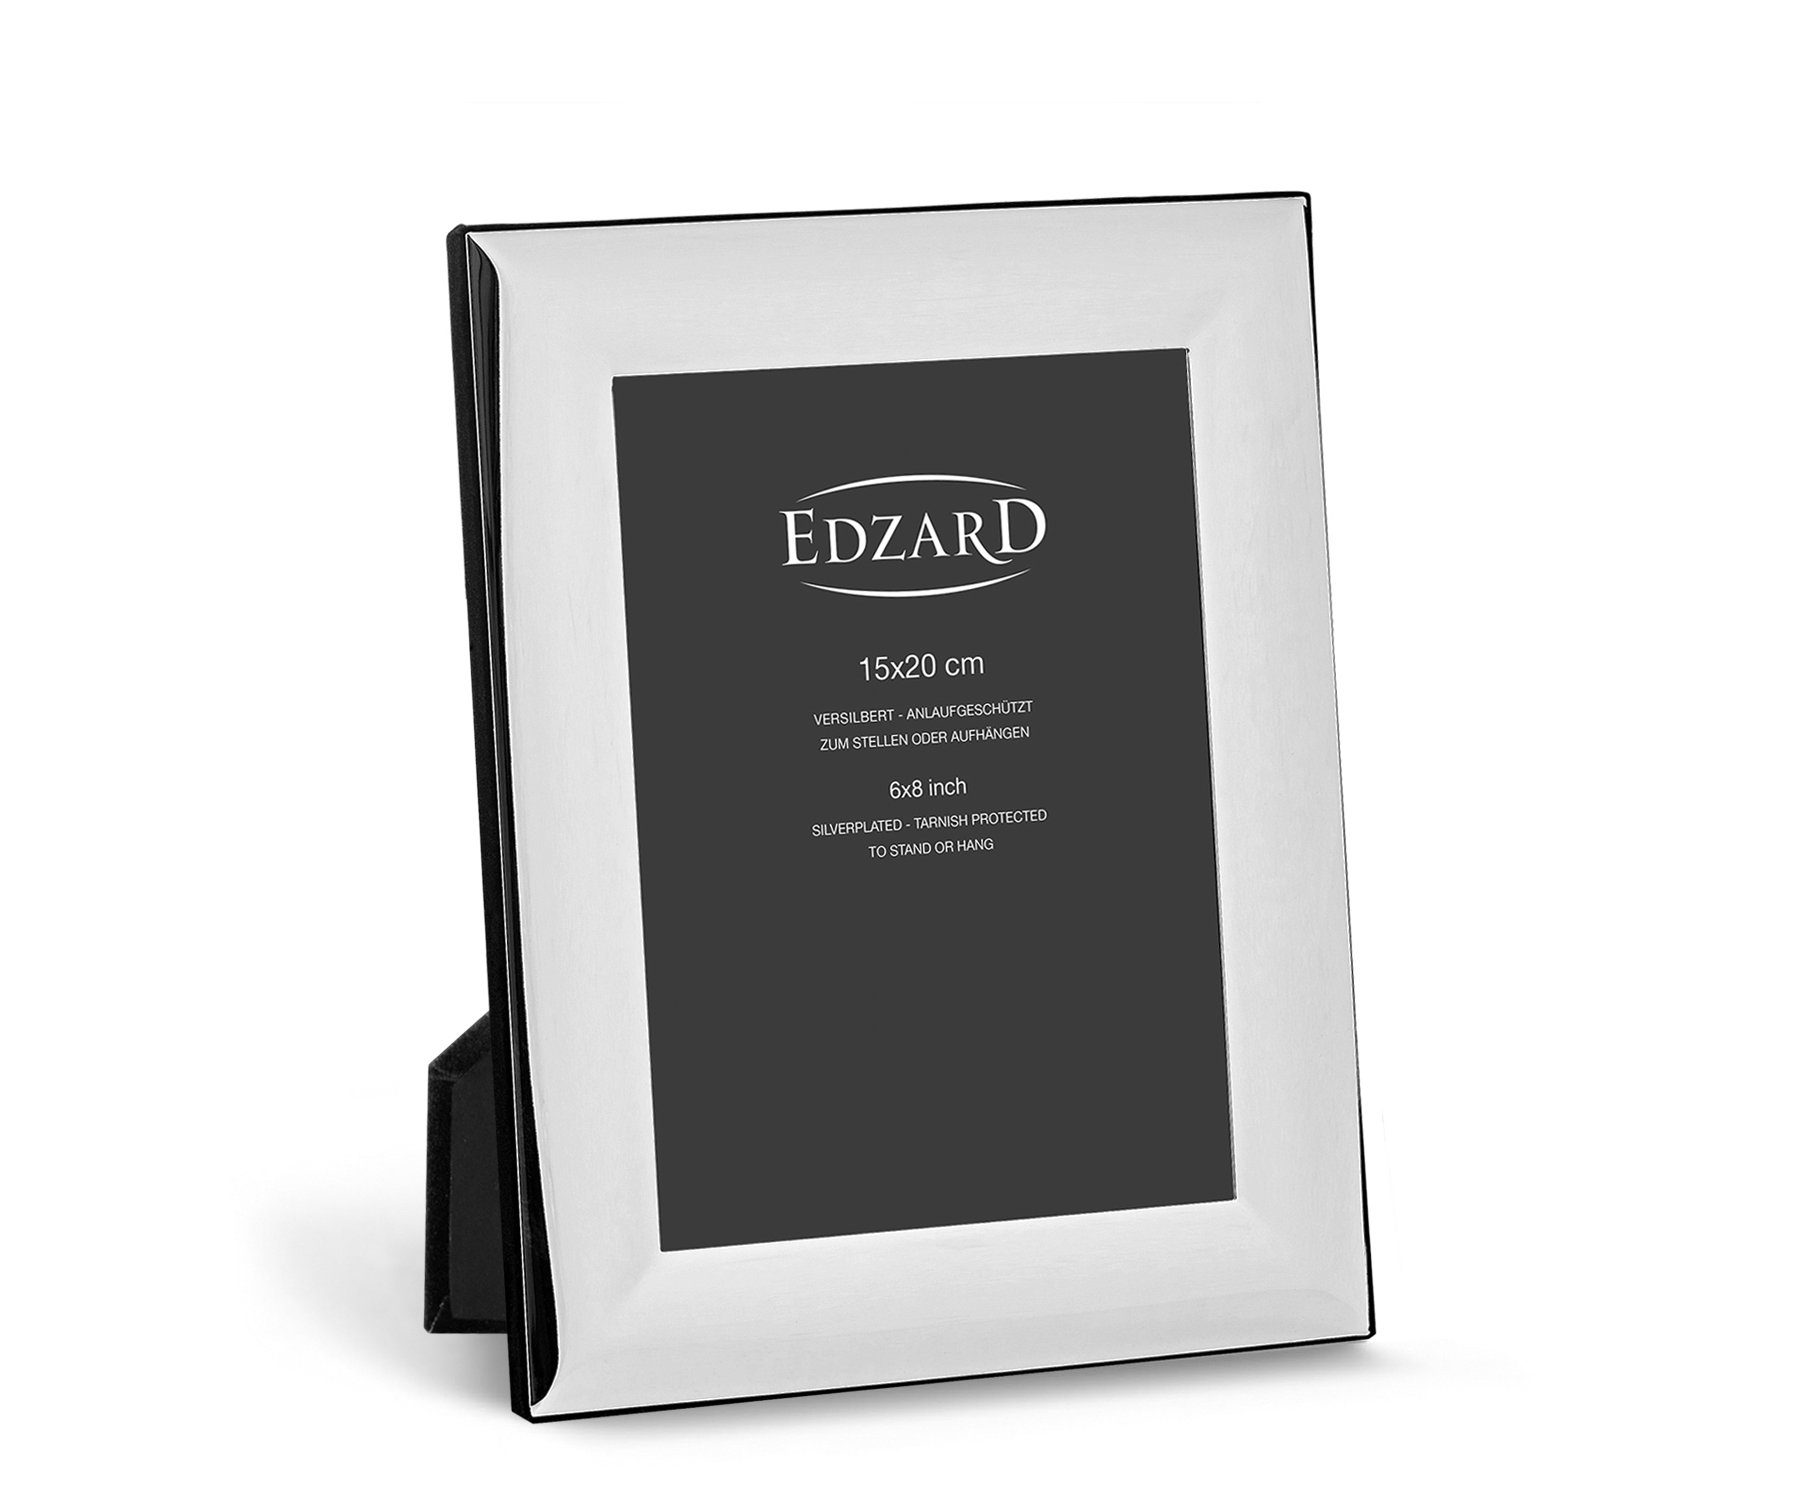 EDZARD Bilderrahmen Gela, versilbert & anlaufgeschützt, 15x20 cm, Fotorahmen inkl. 2 Aufhänger